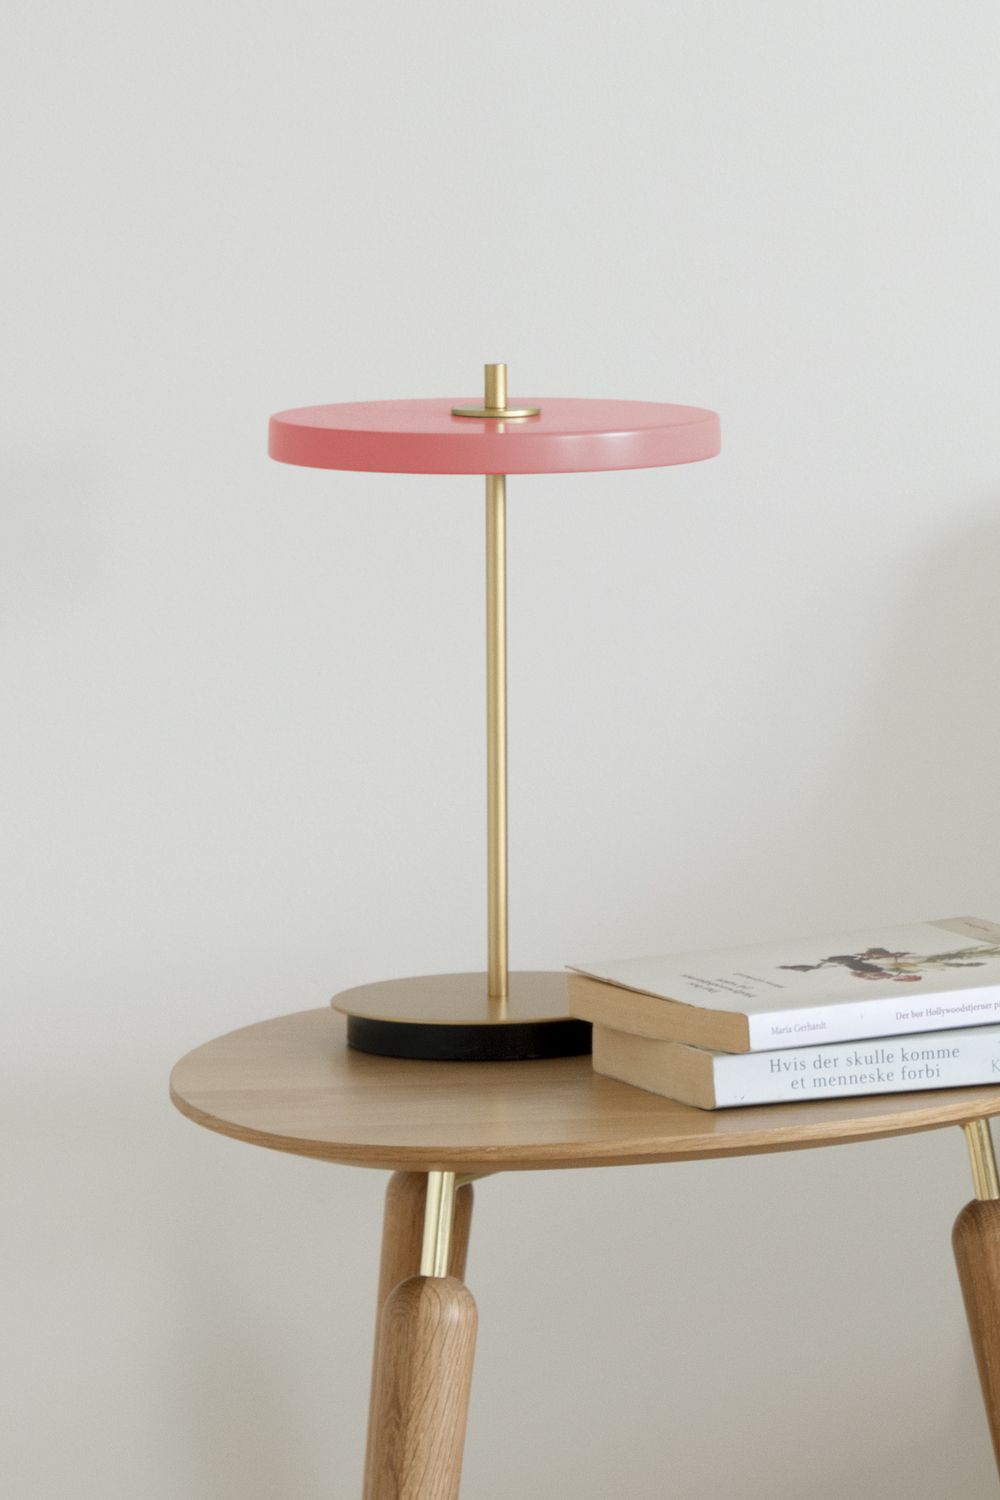 Lampa stołowa z kloszem w kolorze brudnego różu